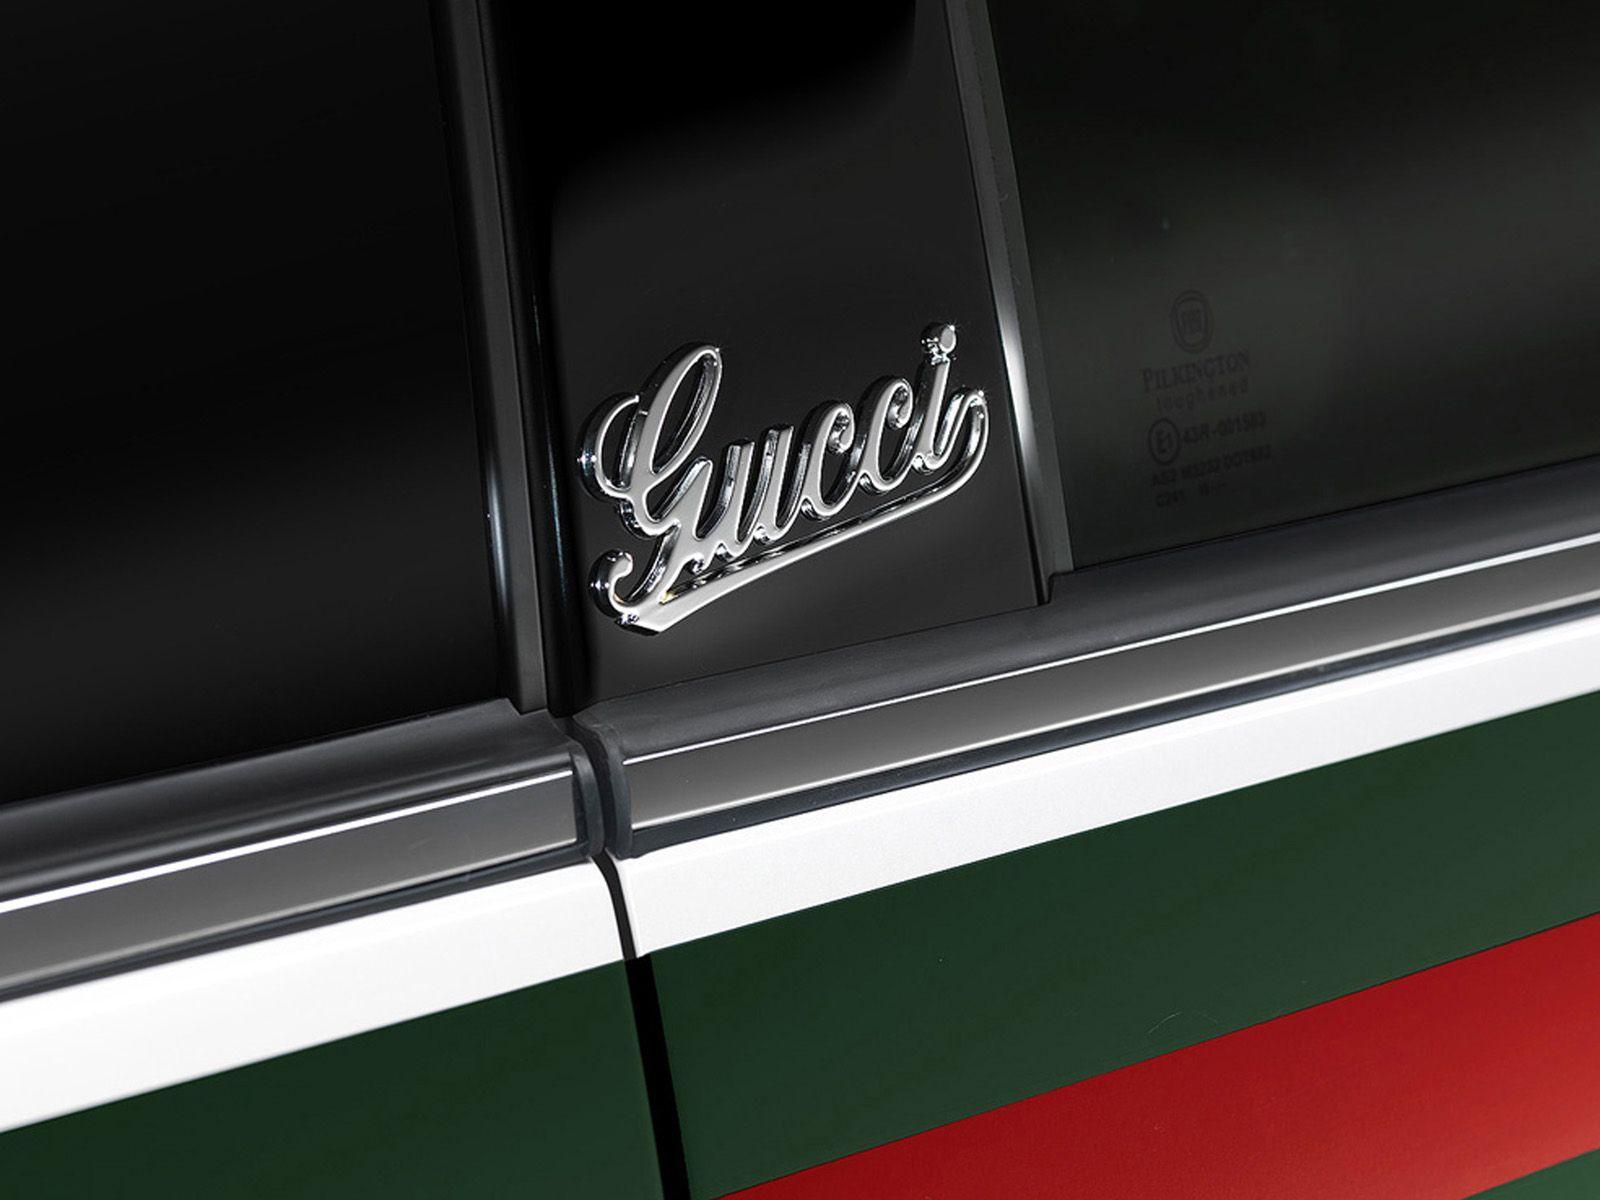 Gucci High Resolution Desktop Wallpaper - Wallpaperforu